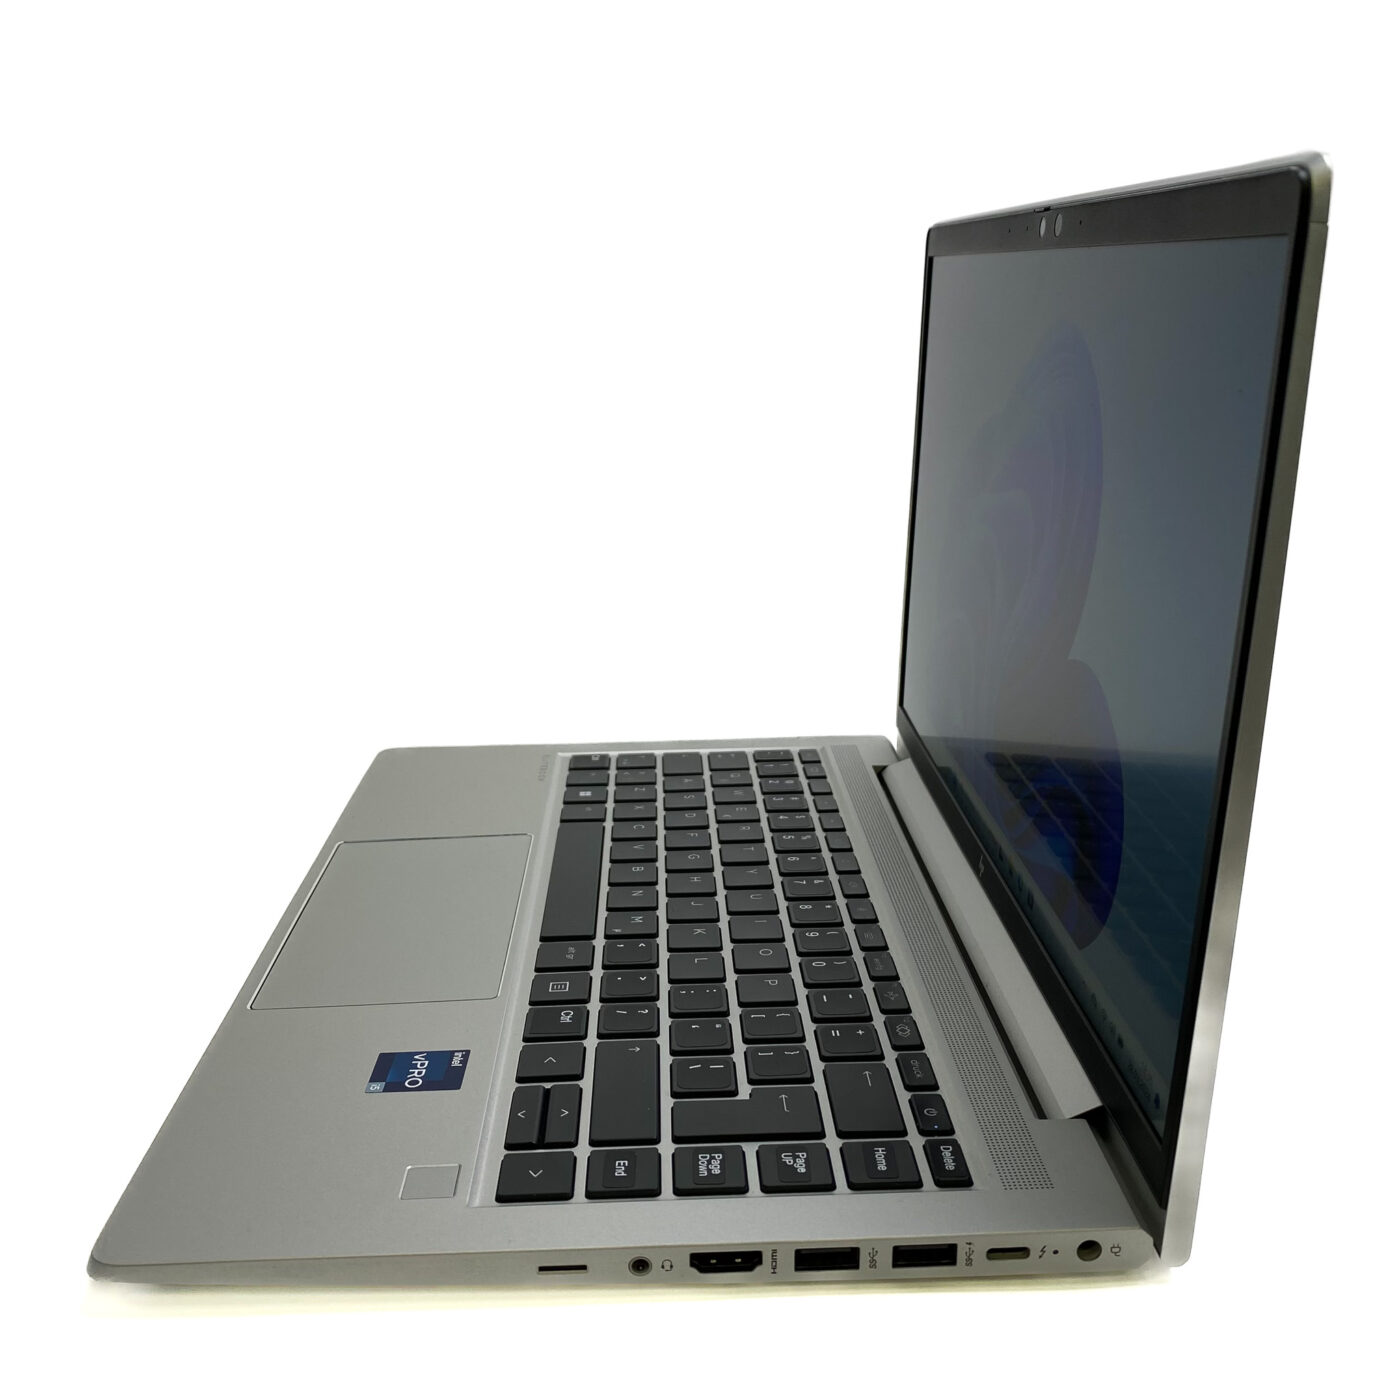 HP EliteBook 640 G9 - wydajny i wszechstronny laptop biznesowy Szukasz wydajnego i wszechstronnego laptopa biznesowego? HP EliteBook 640 G9 to doskonały wybór. Ten notebook łączy w sobie wysoką wydajność, nowoczesne funkcje i atrakcyjną cenę.